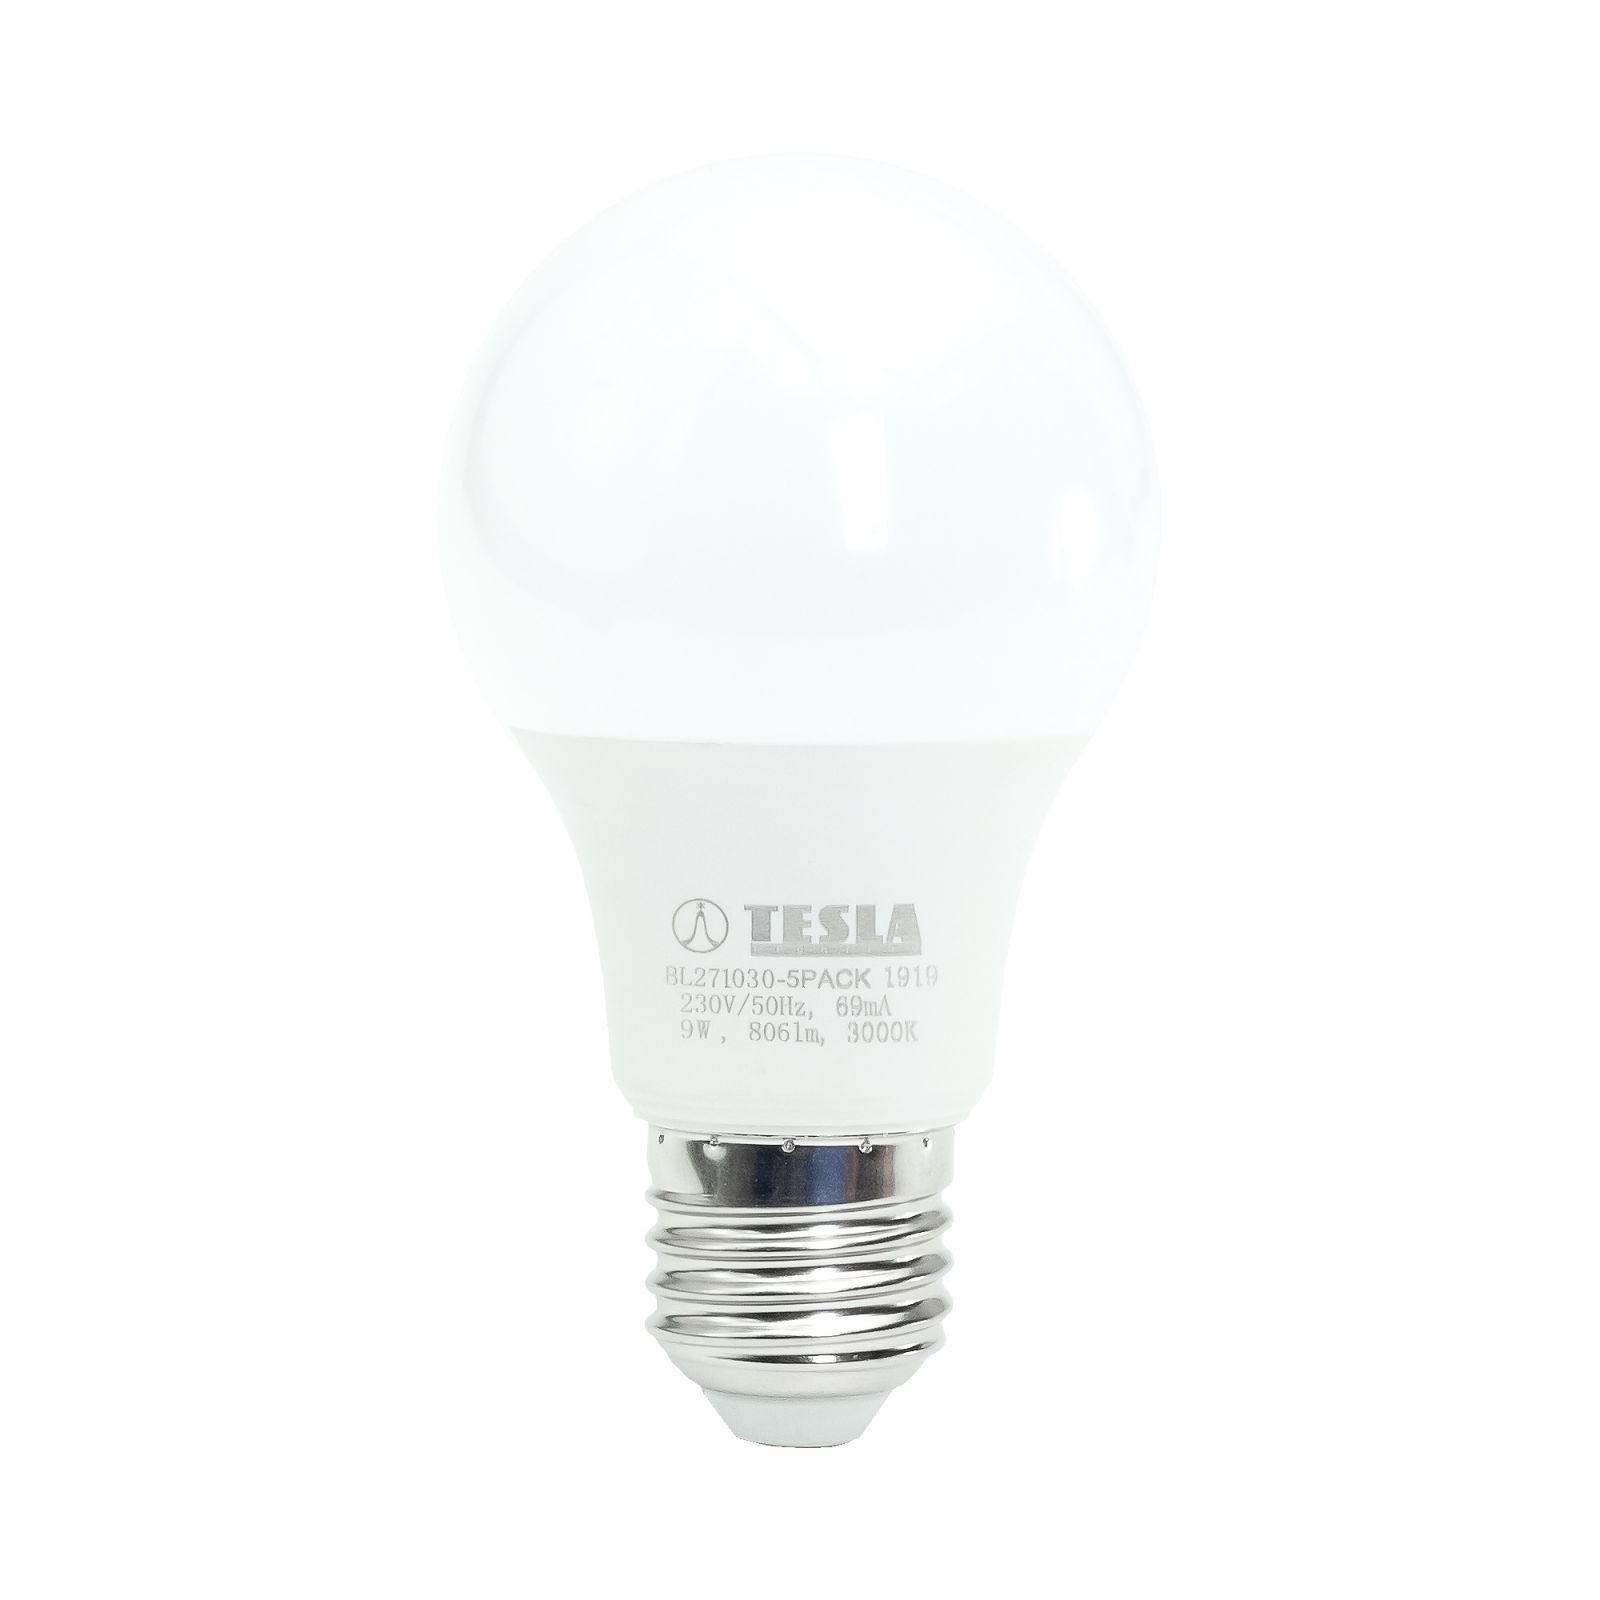 Tesla - LED žárovka BULB E27, 9W, 230V, 806lm, 25 000h, 3000K teplá bílá, 220st 5ks v balení Tesla Lighting